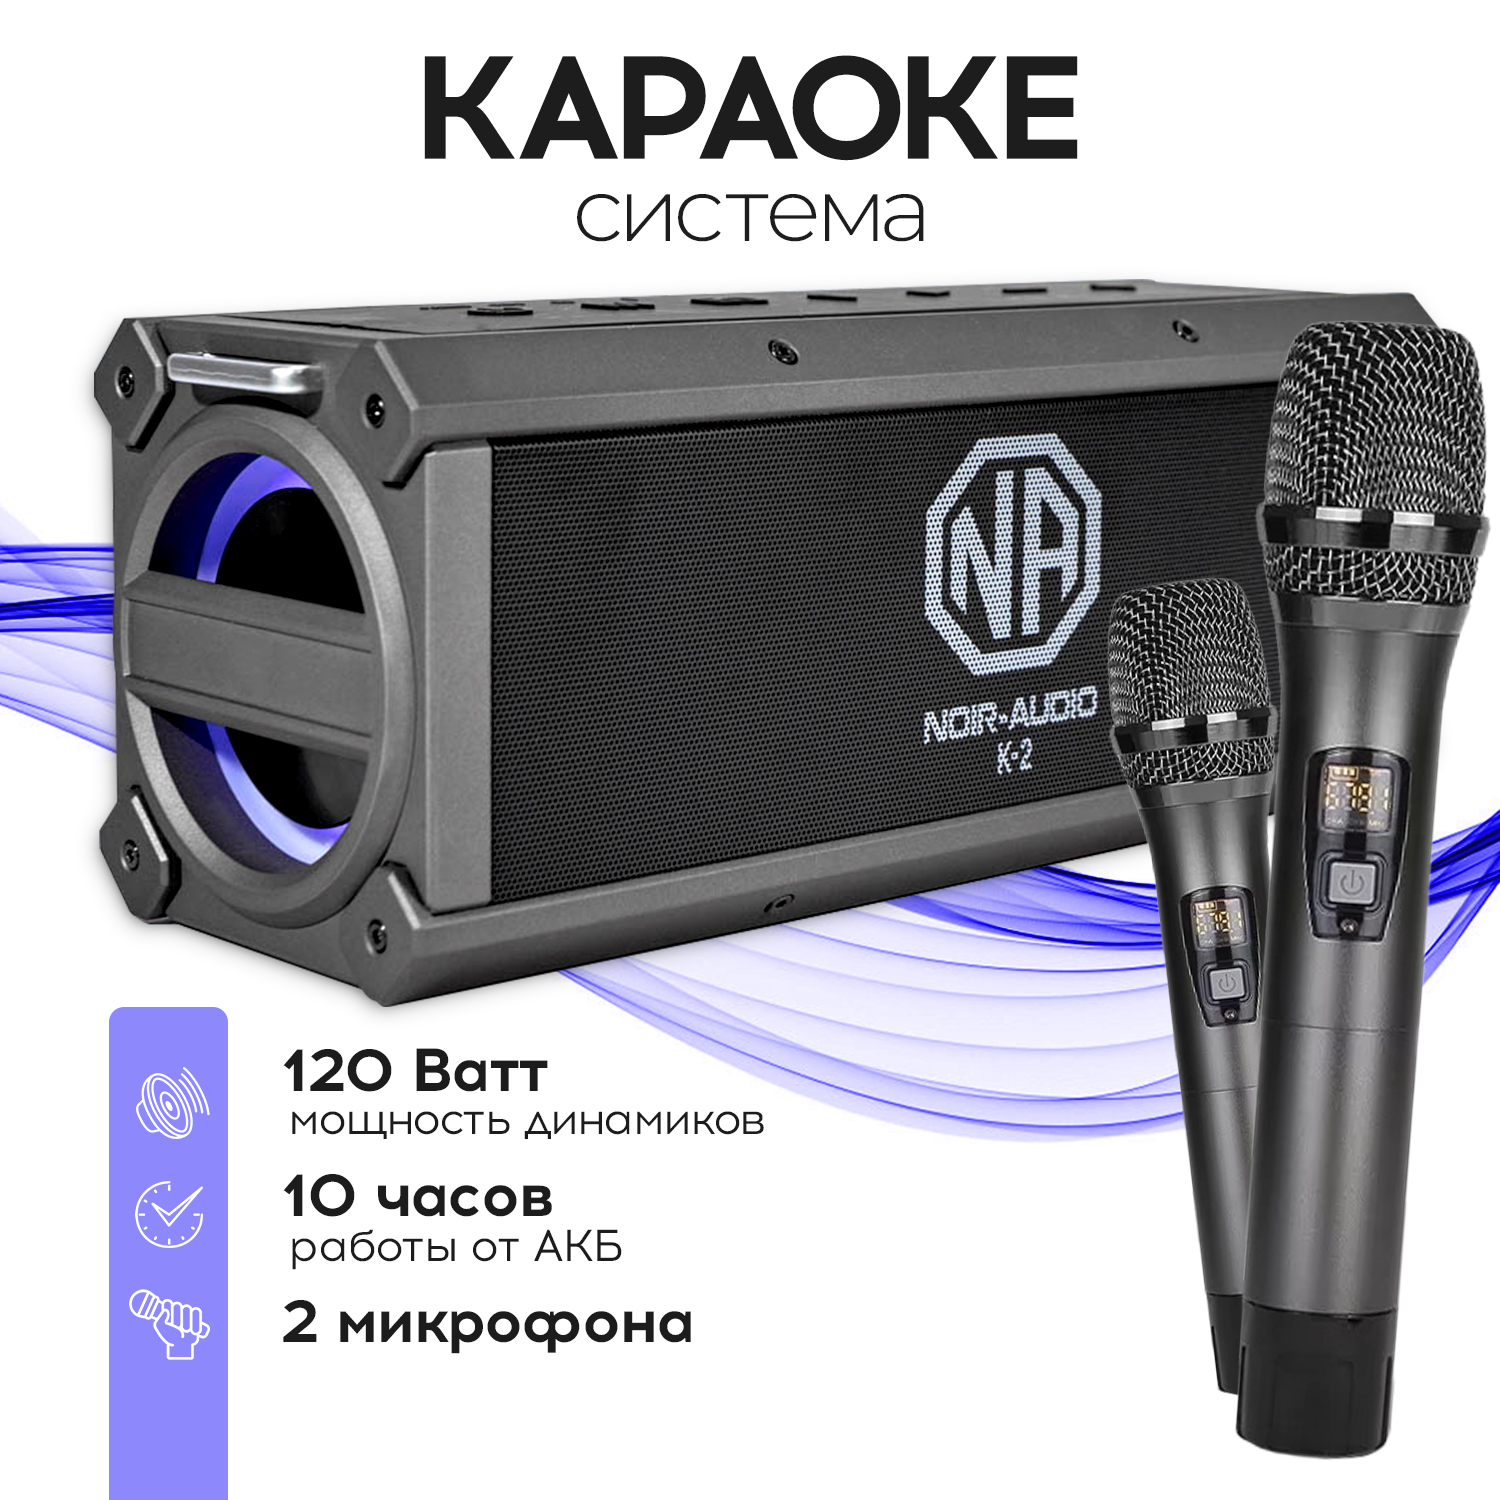 NOIR-audio K-2 акустическая система с двумя беспроводными микрофонами